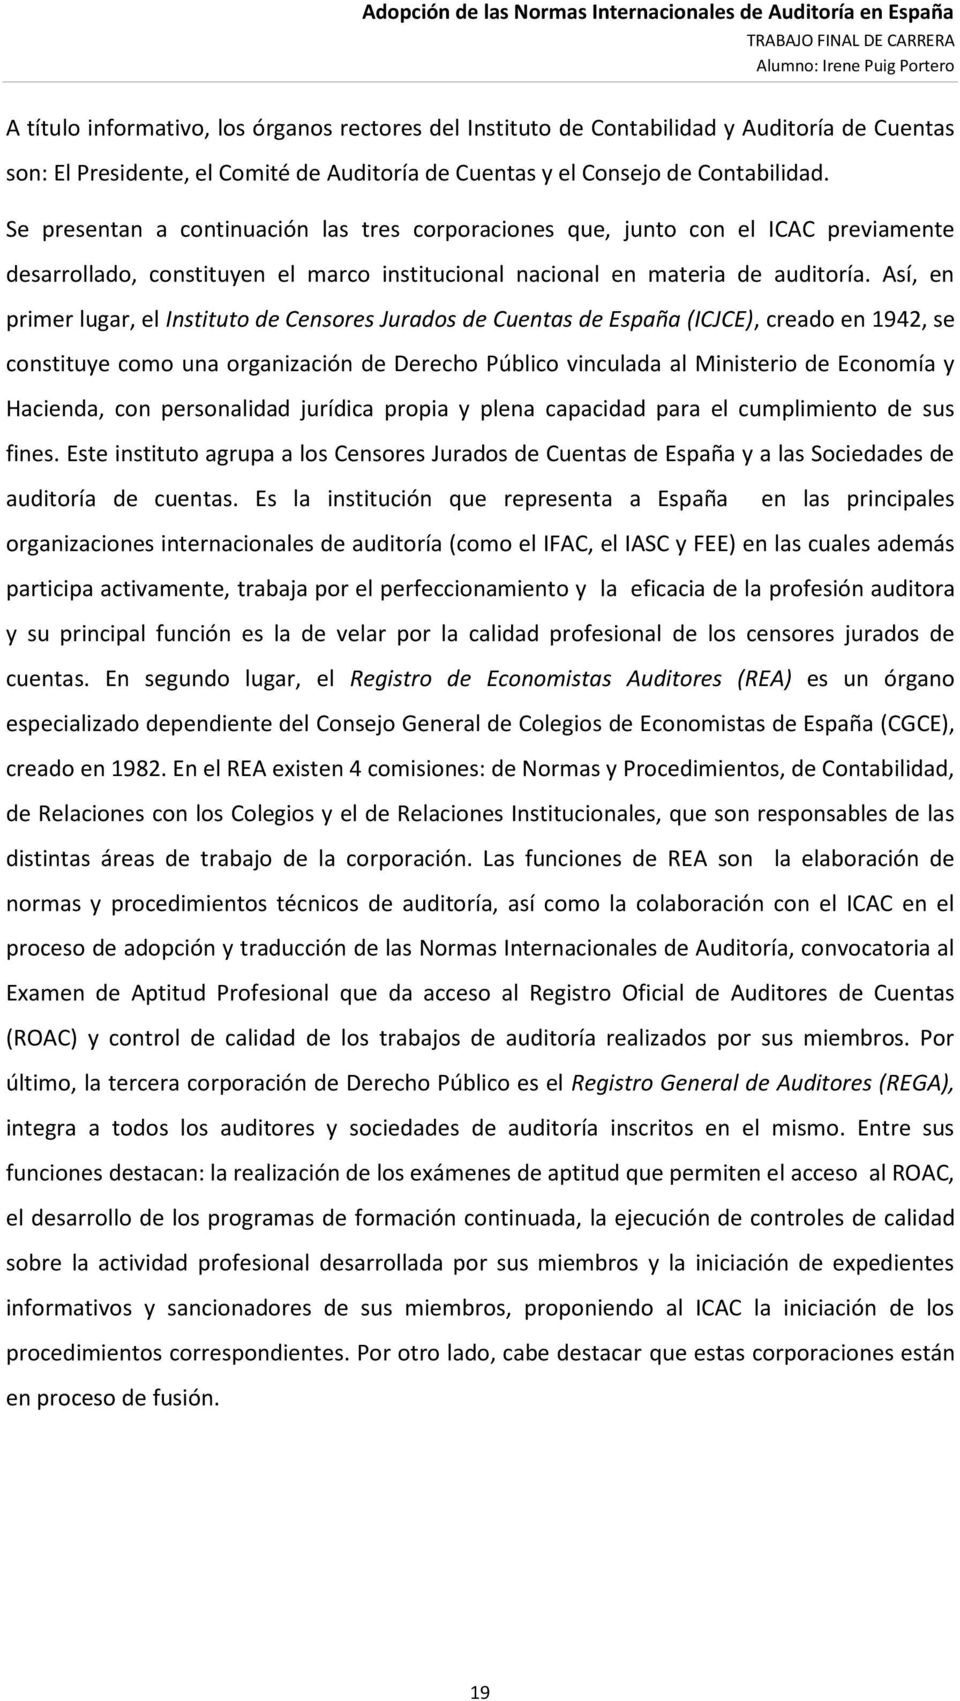 Así, en primer lugar, el Instituto de Censores Jurados de Cuentas de España (ICJCE), creado en 1942, se constituye como una organización de Derecho Público vinculada al Ministerio de Economía y